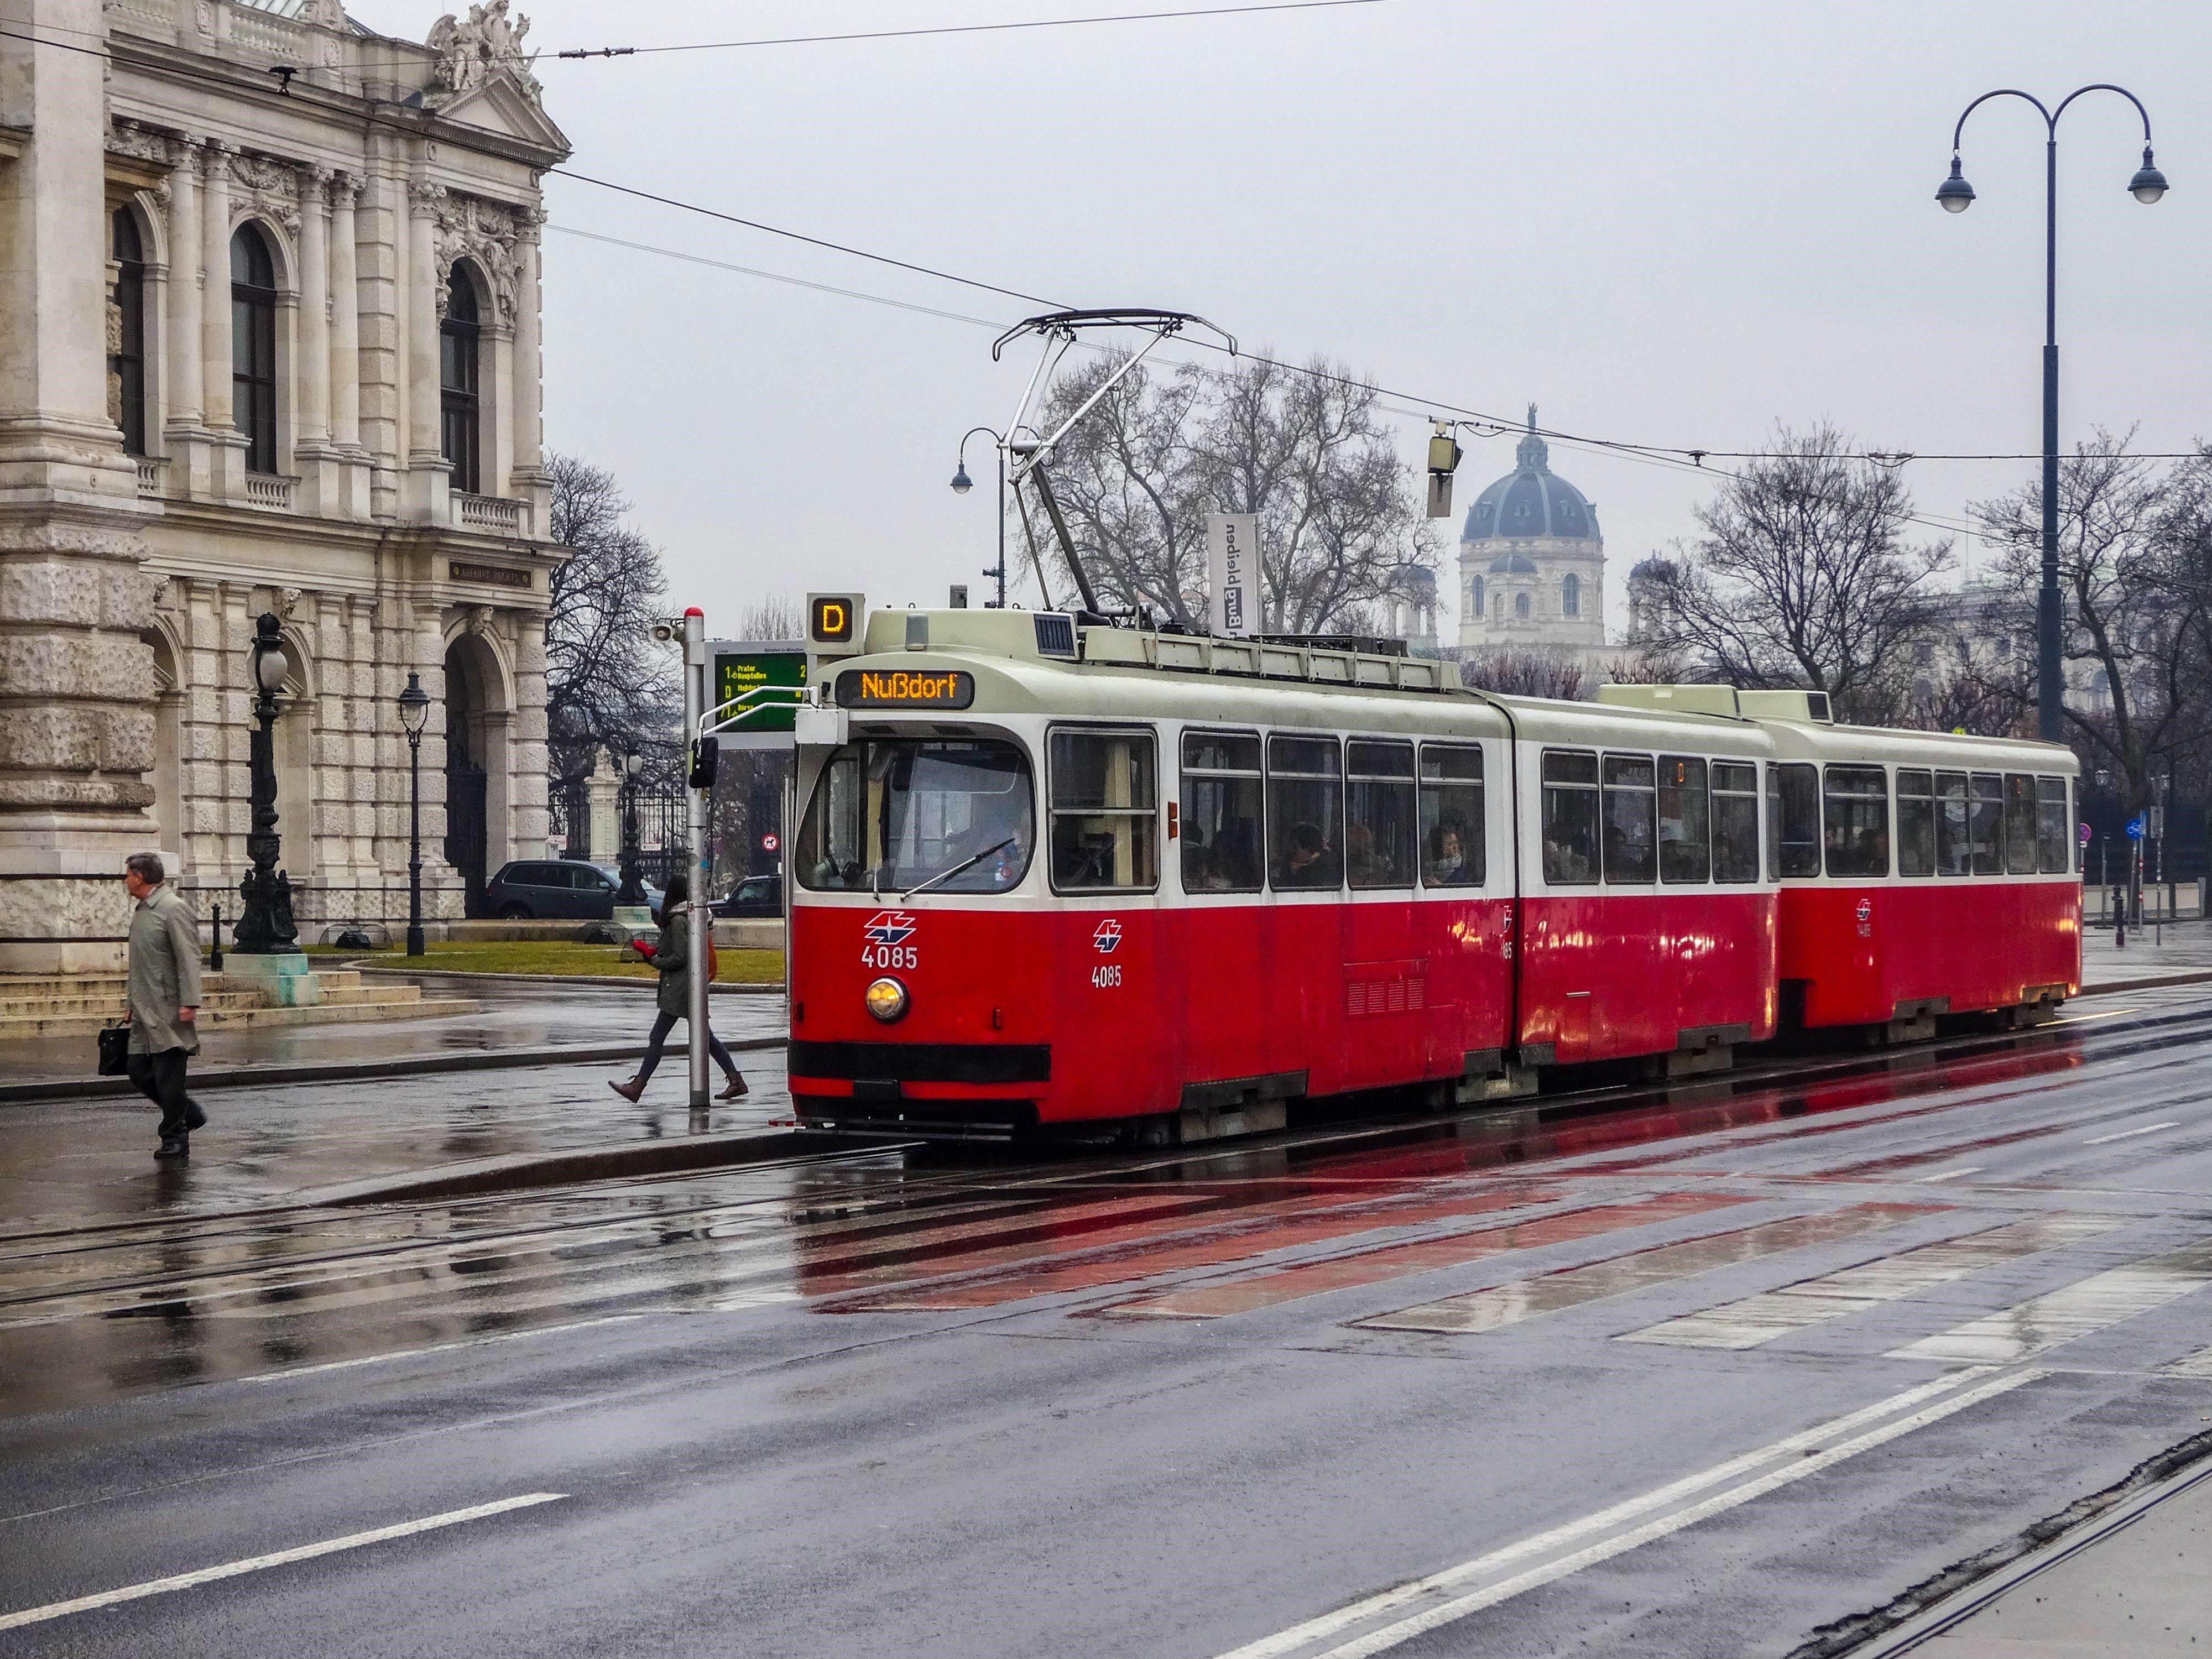 Erkunde den Wiener Ring mit einem niedrigen Budget - die traditionelle Rote Straßenbahn an einem regnerischen Tag